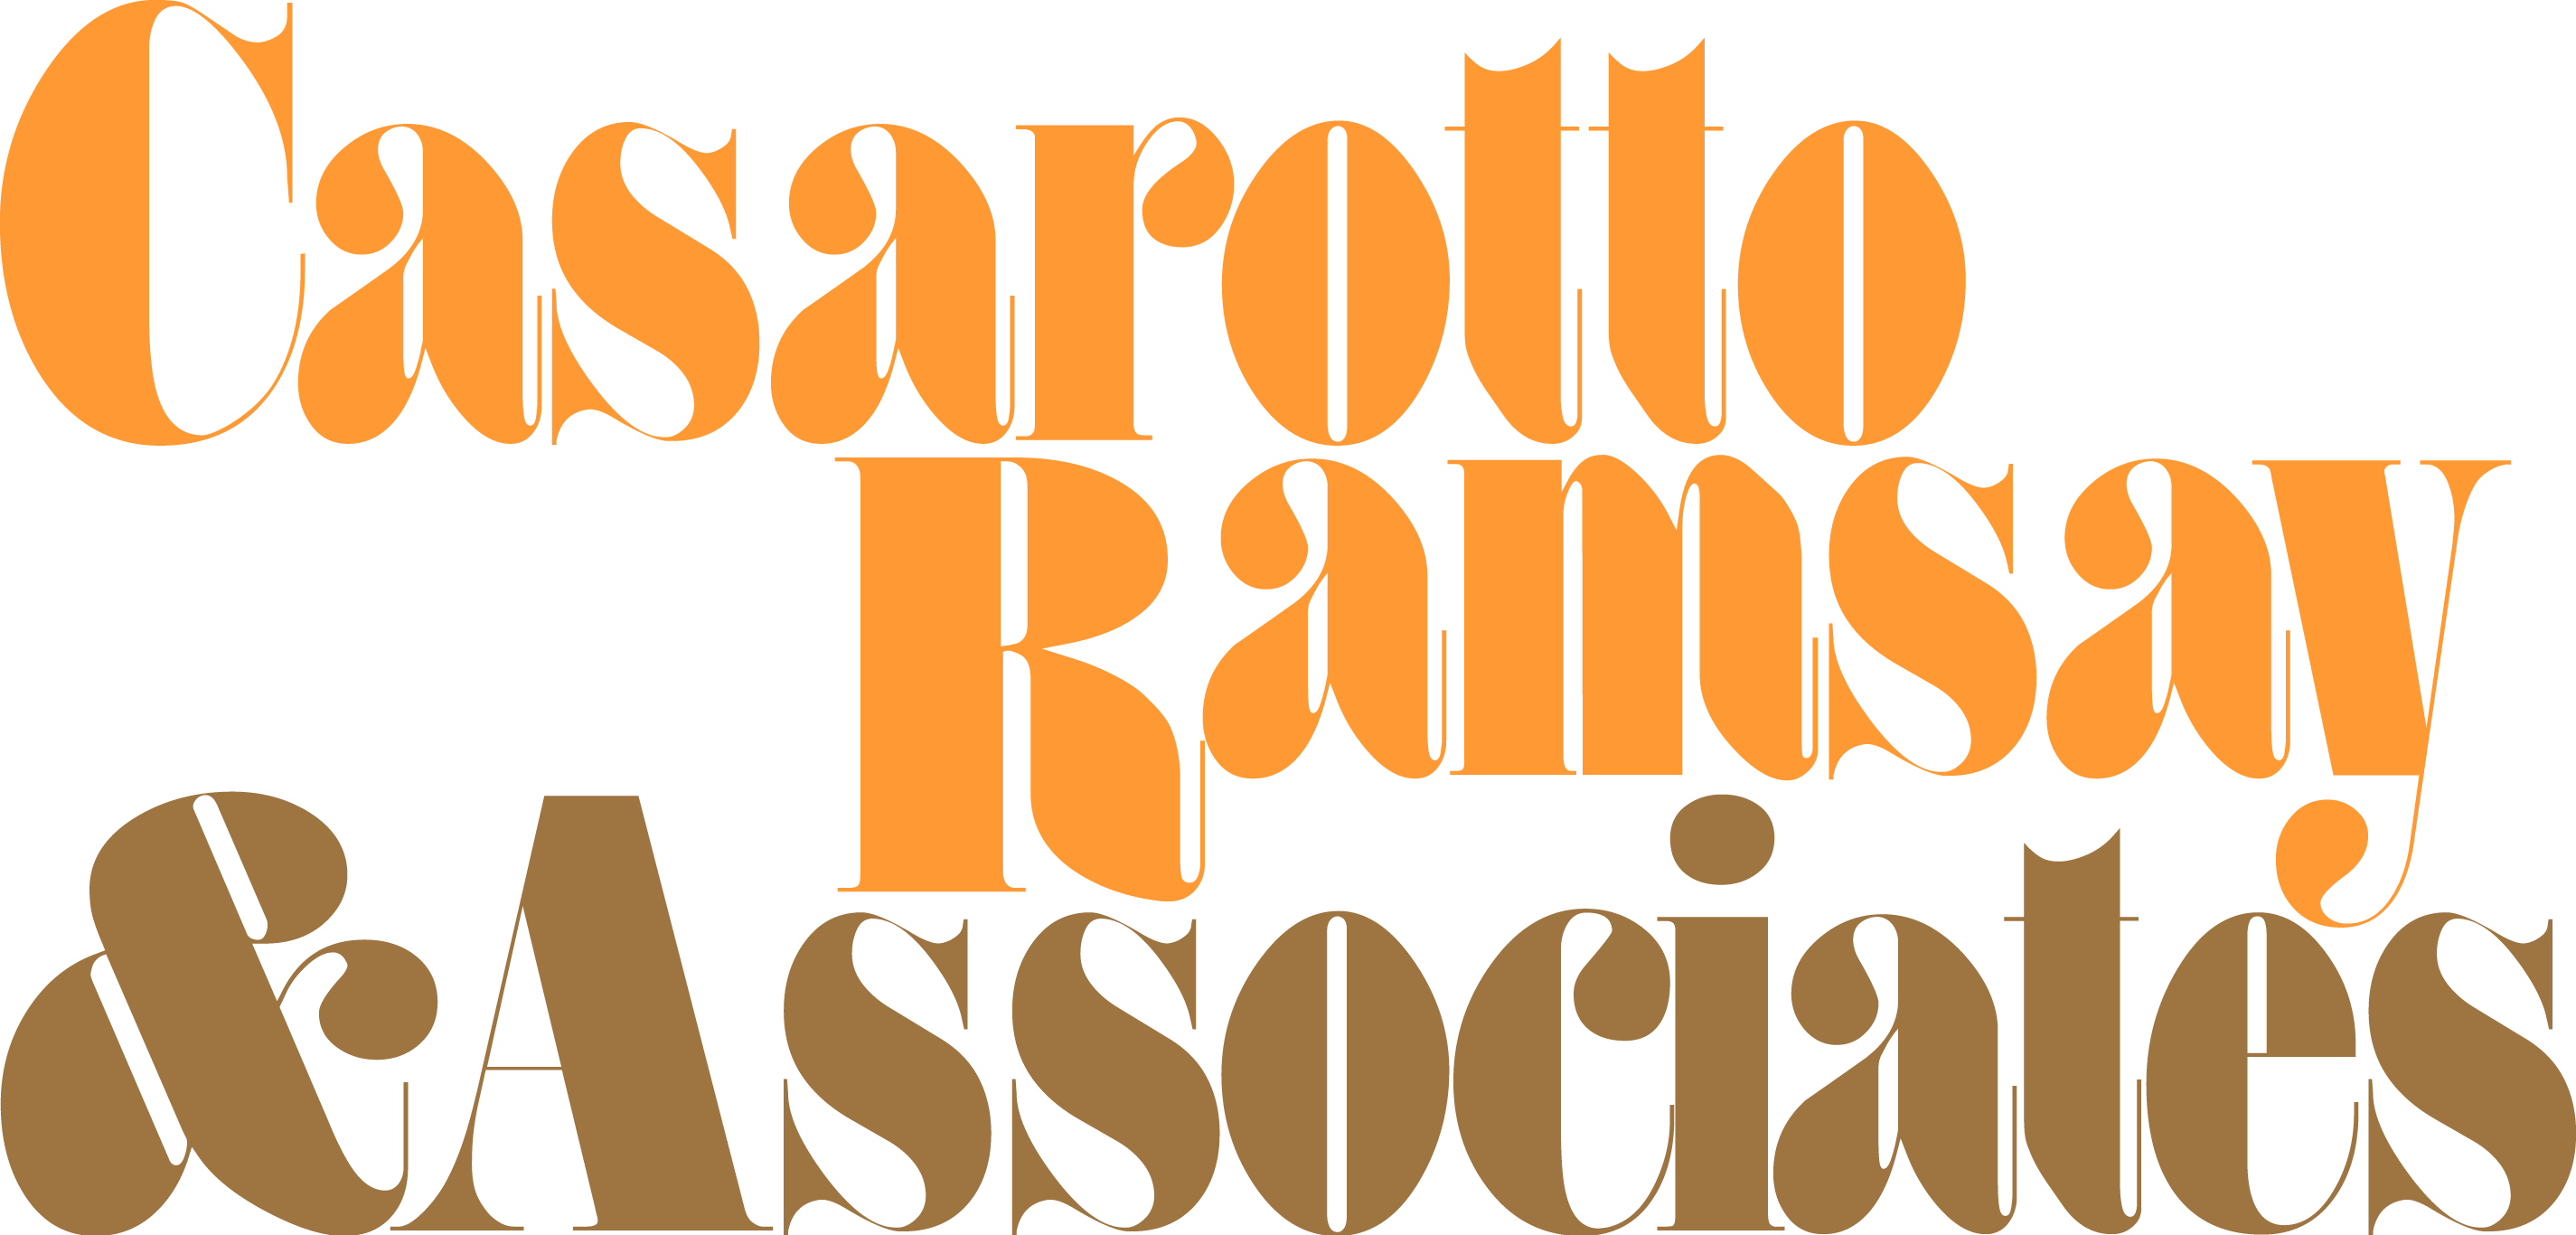 Casarotto Logo